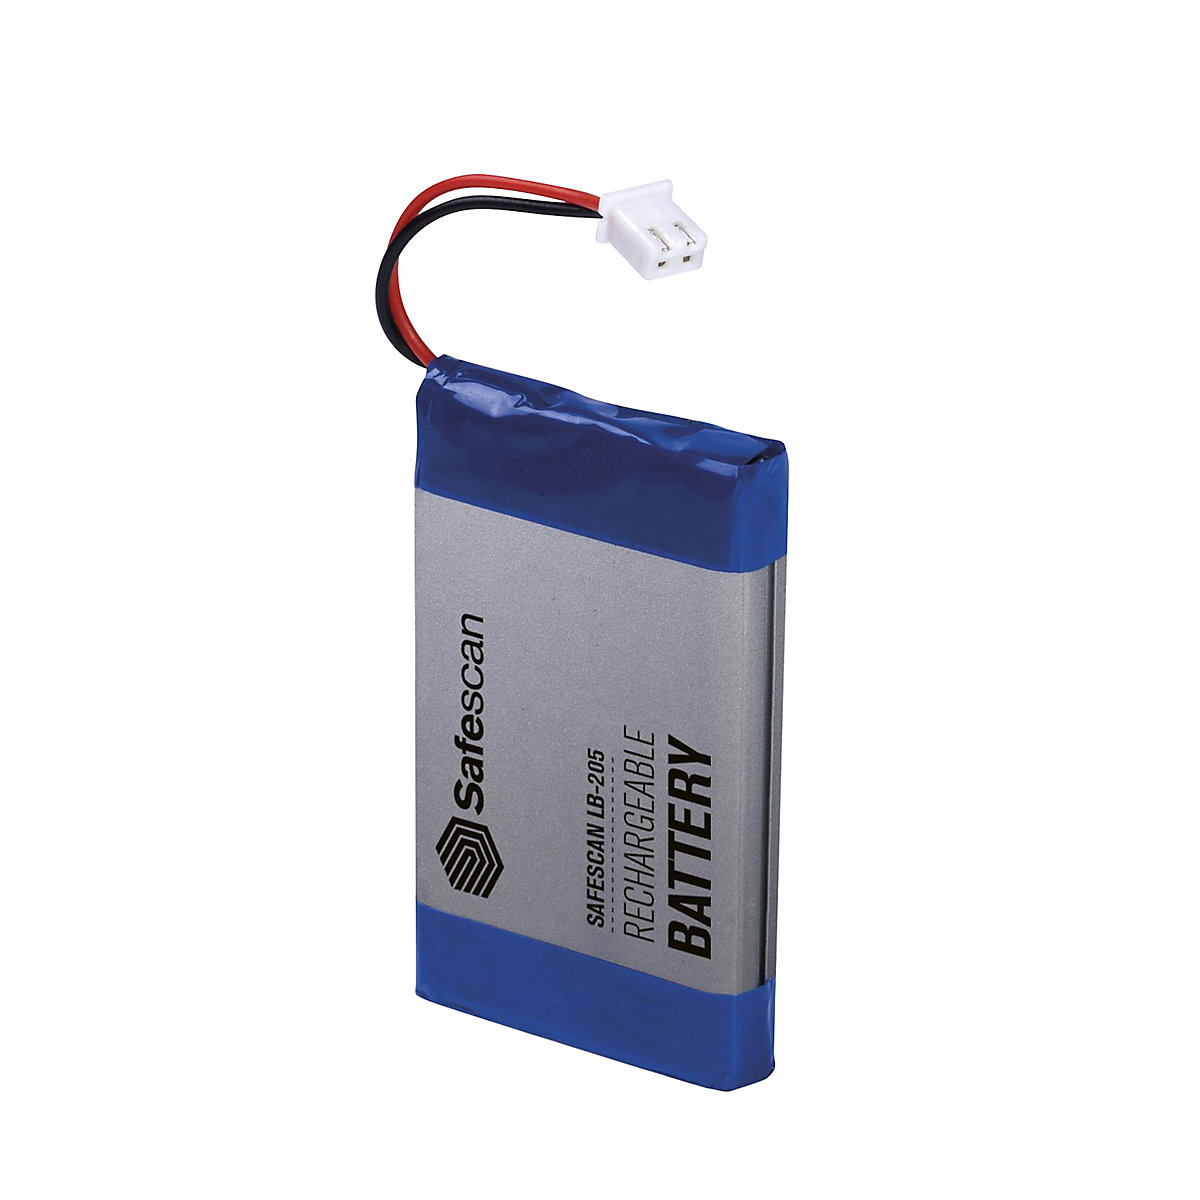 Bateria recarregável - Safescan